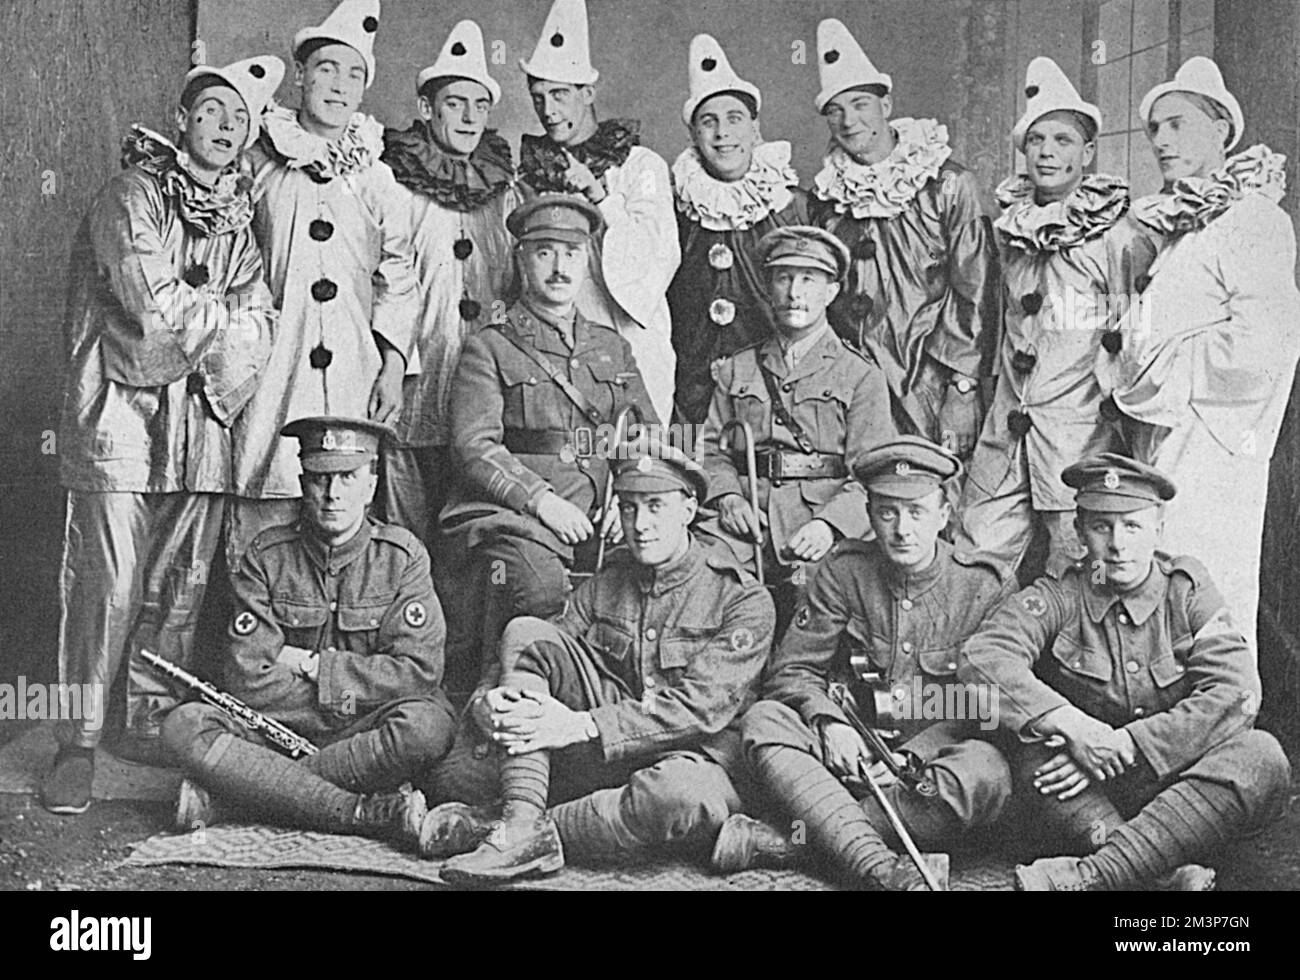 Les Varlets, une troupe britannique qui divertit des hommes sur le front occidental pendant la première Guerre mondiale. Leurs 'théâtres' comprenaient des granges, des champs, des dug-outs, et des estaminettes désertes et un spectacle de tehy donné le 24 juin 1916 a été exécuté sur le terrain d'un château à un public de 3000. Date: 1916 Banque D'Images